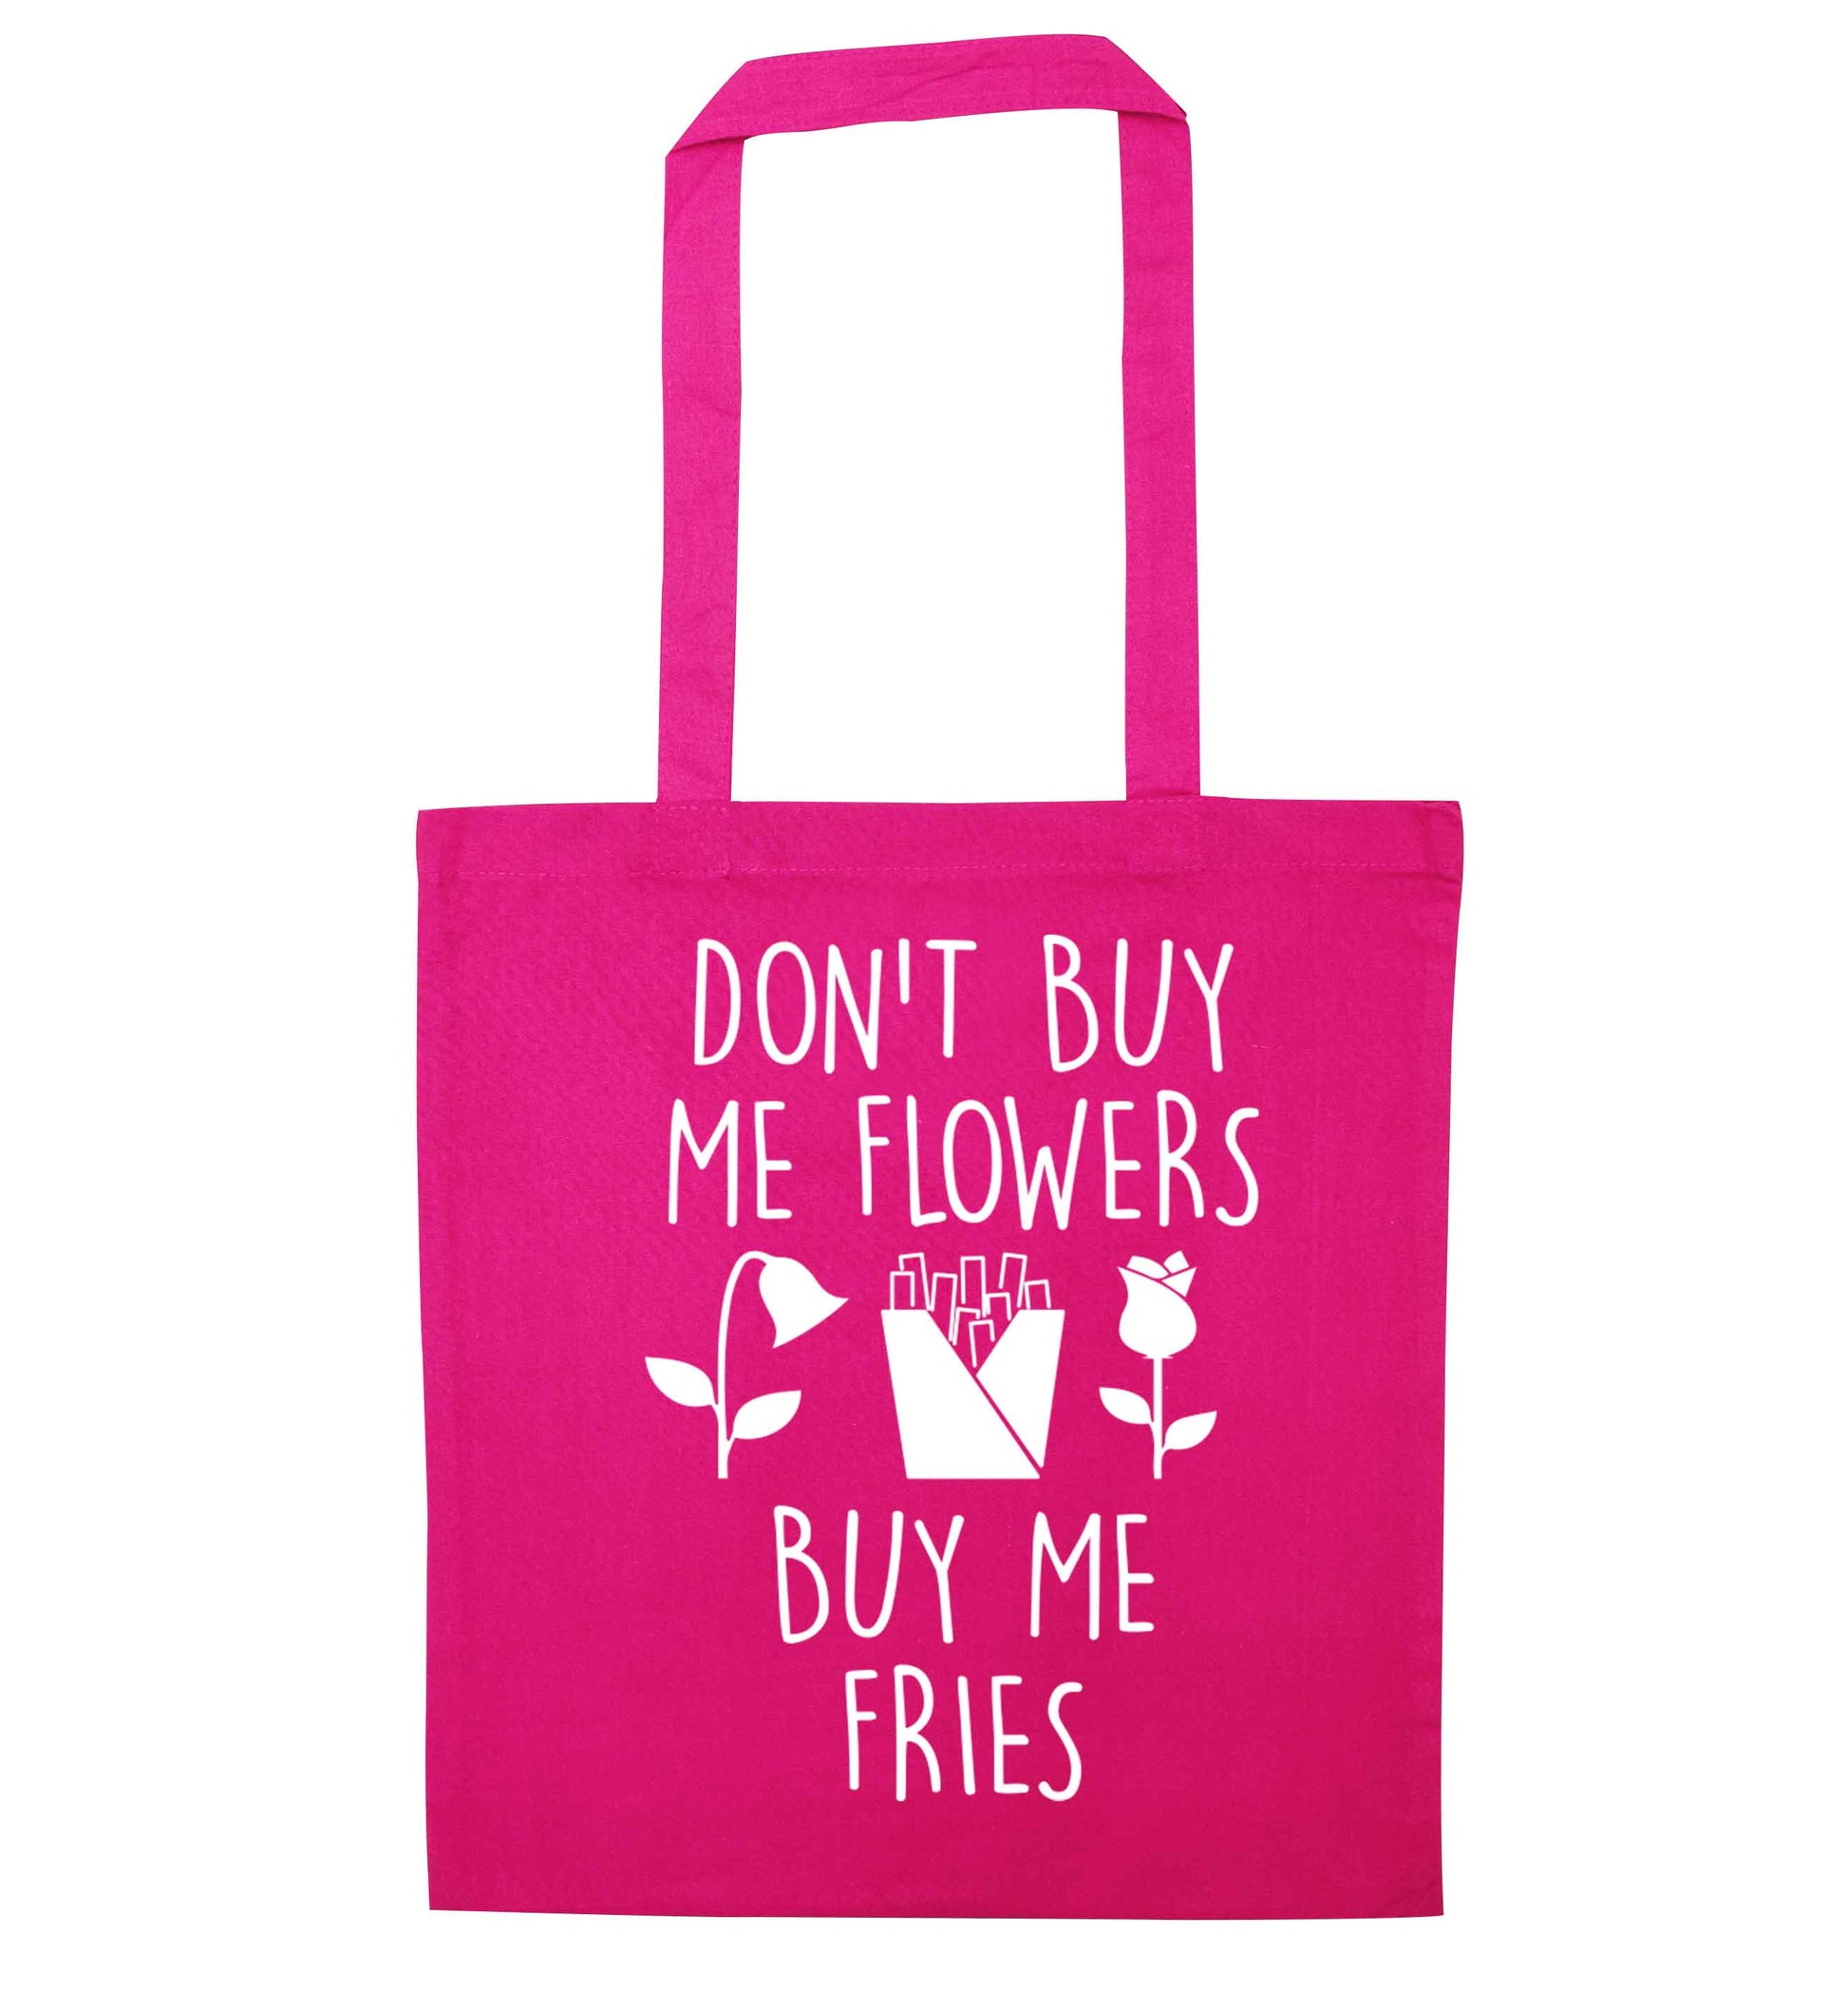 Don't buy me flowers buy me fries pink tote bag